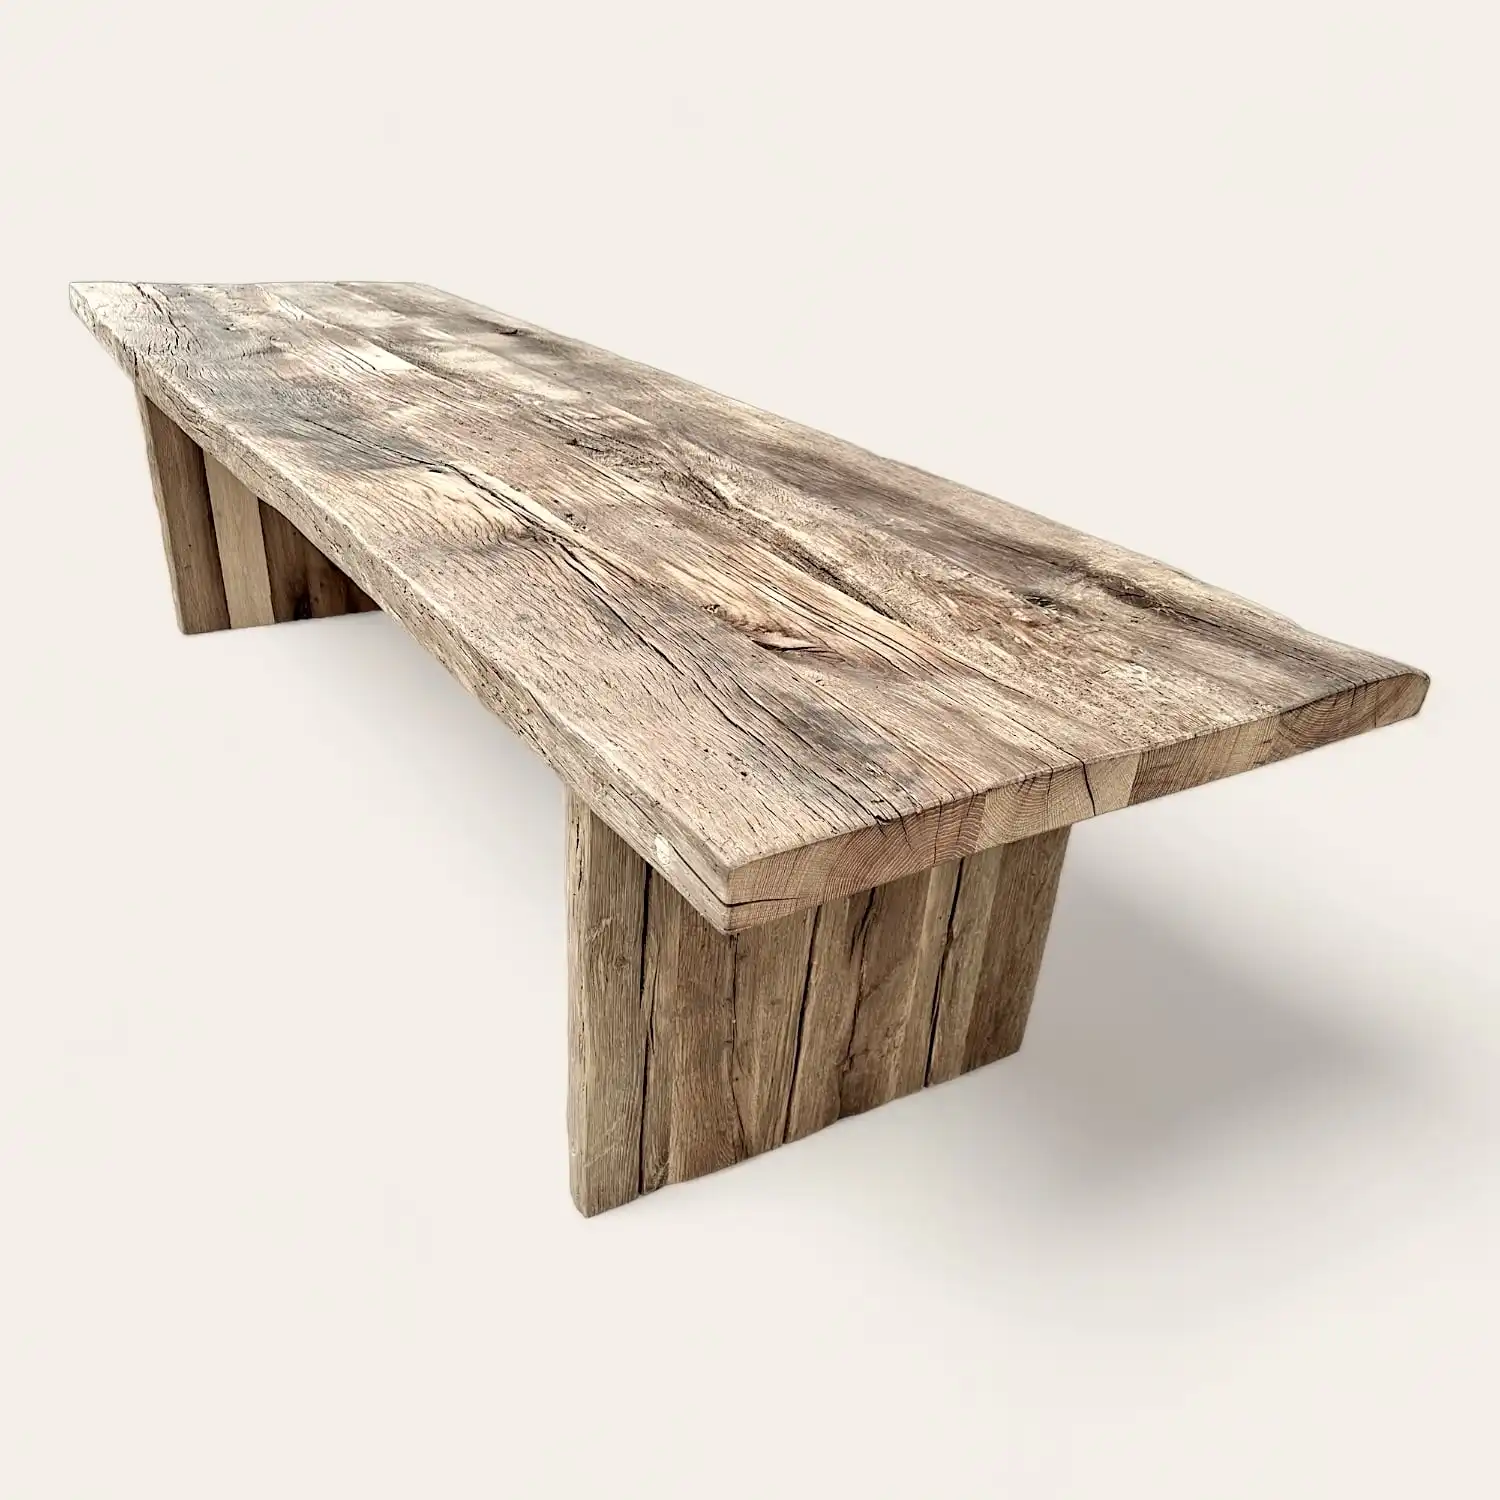  Une table à manger en bois rustique sur fond blanc. 